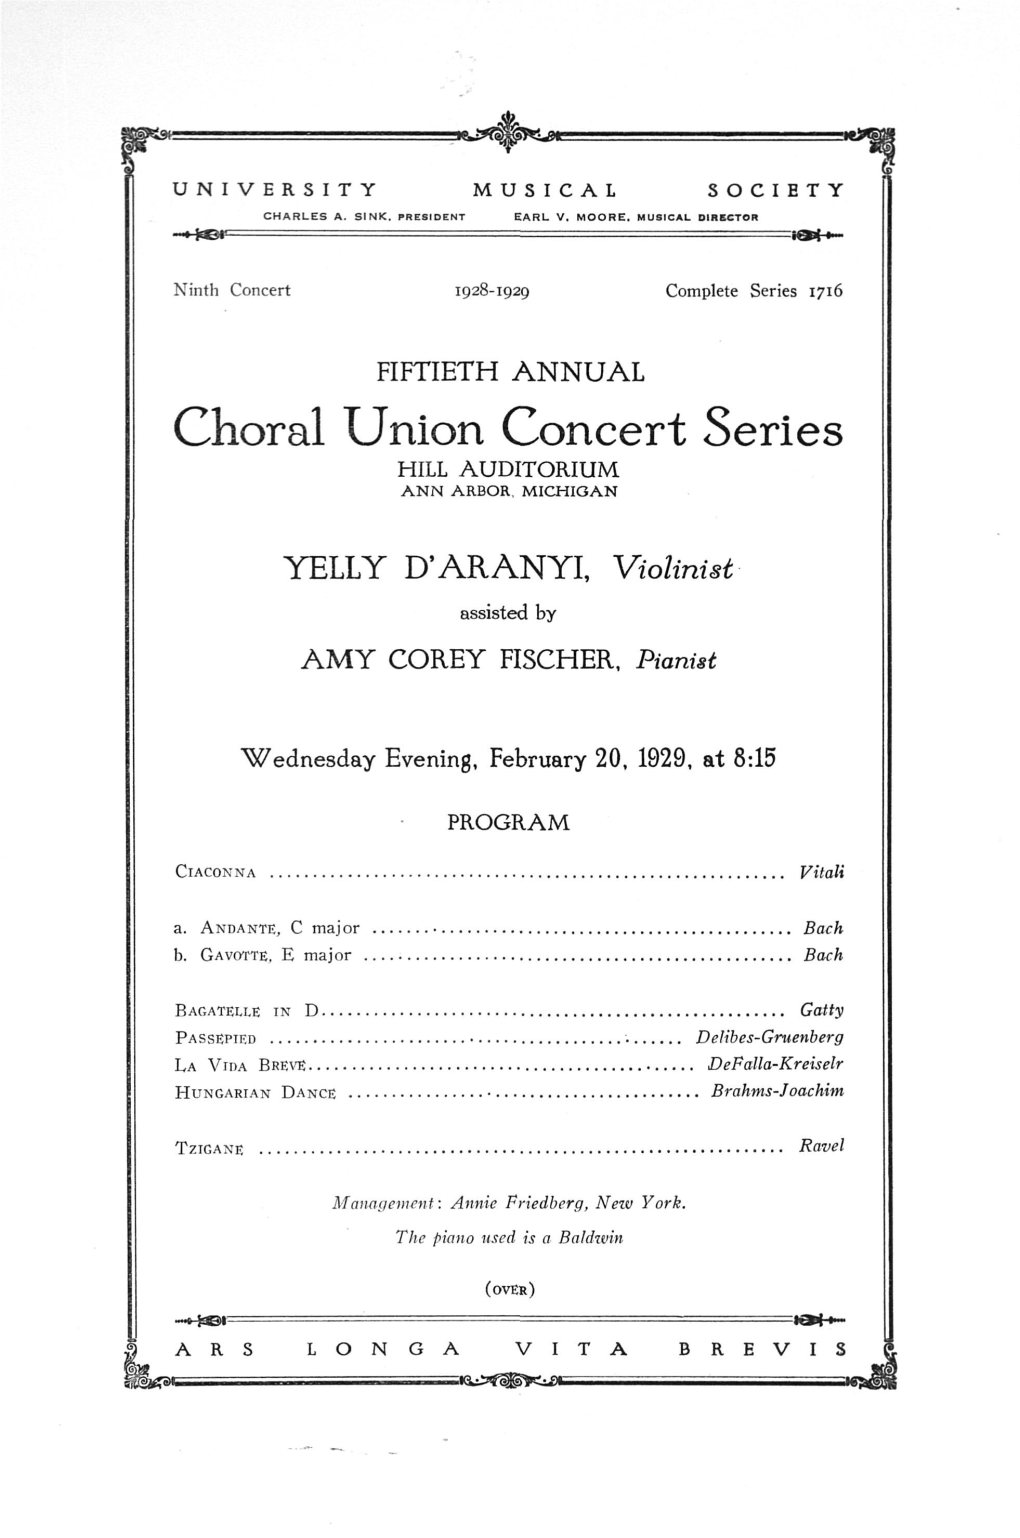 Choral Union Concert Series HILL AUDITORIUM ANN ARBOR, MICHIGAN